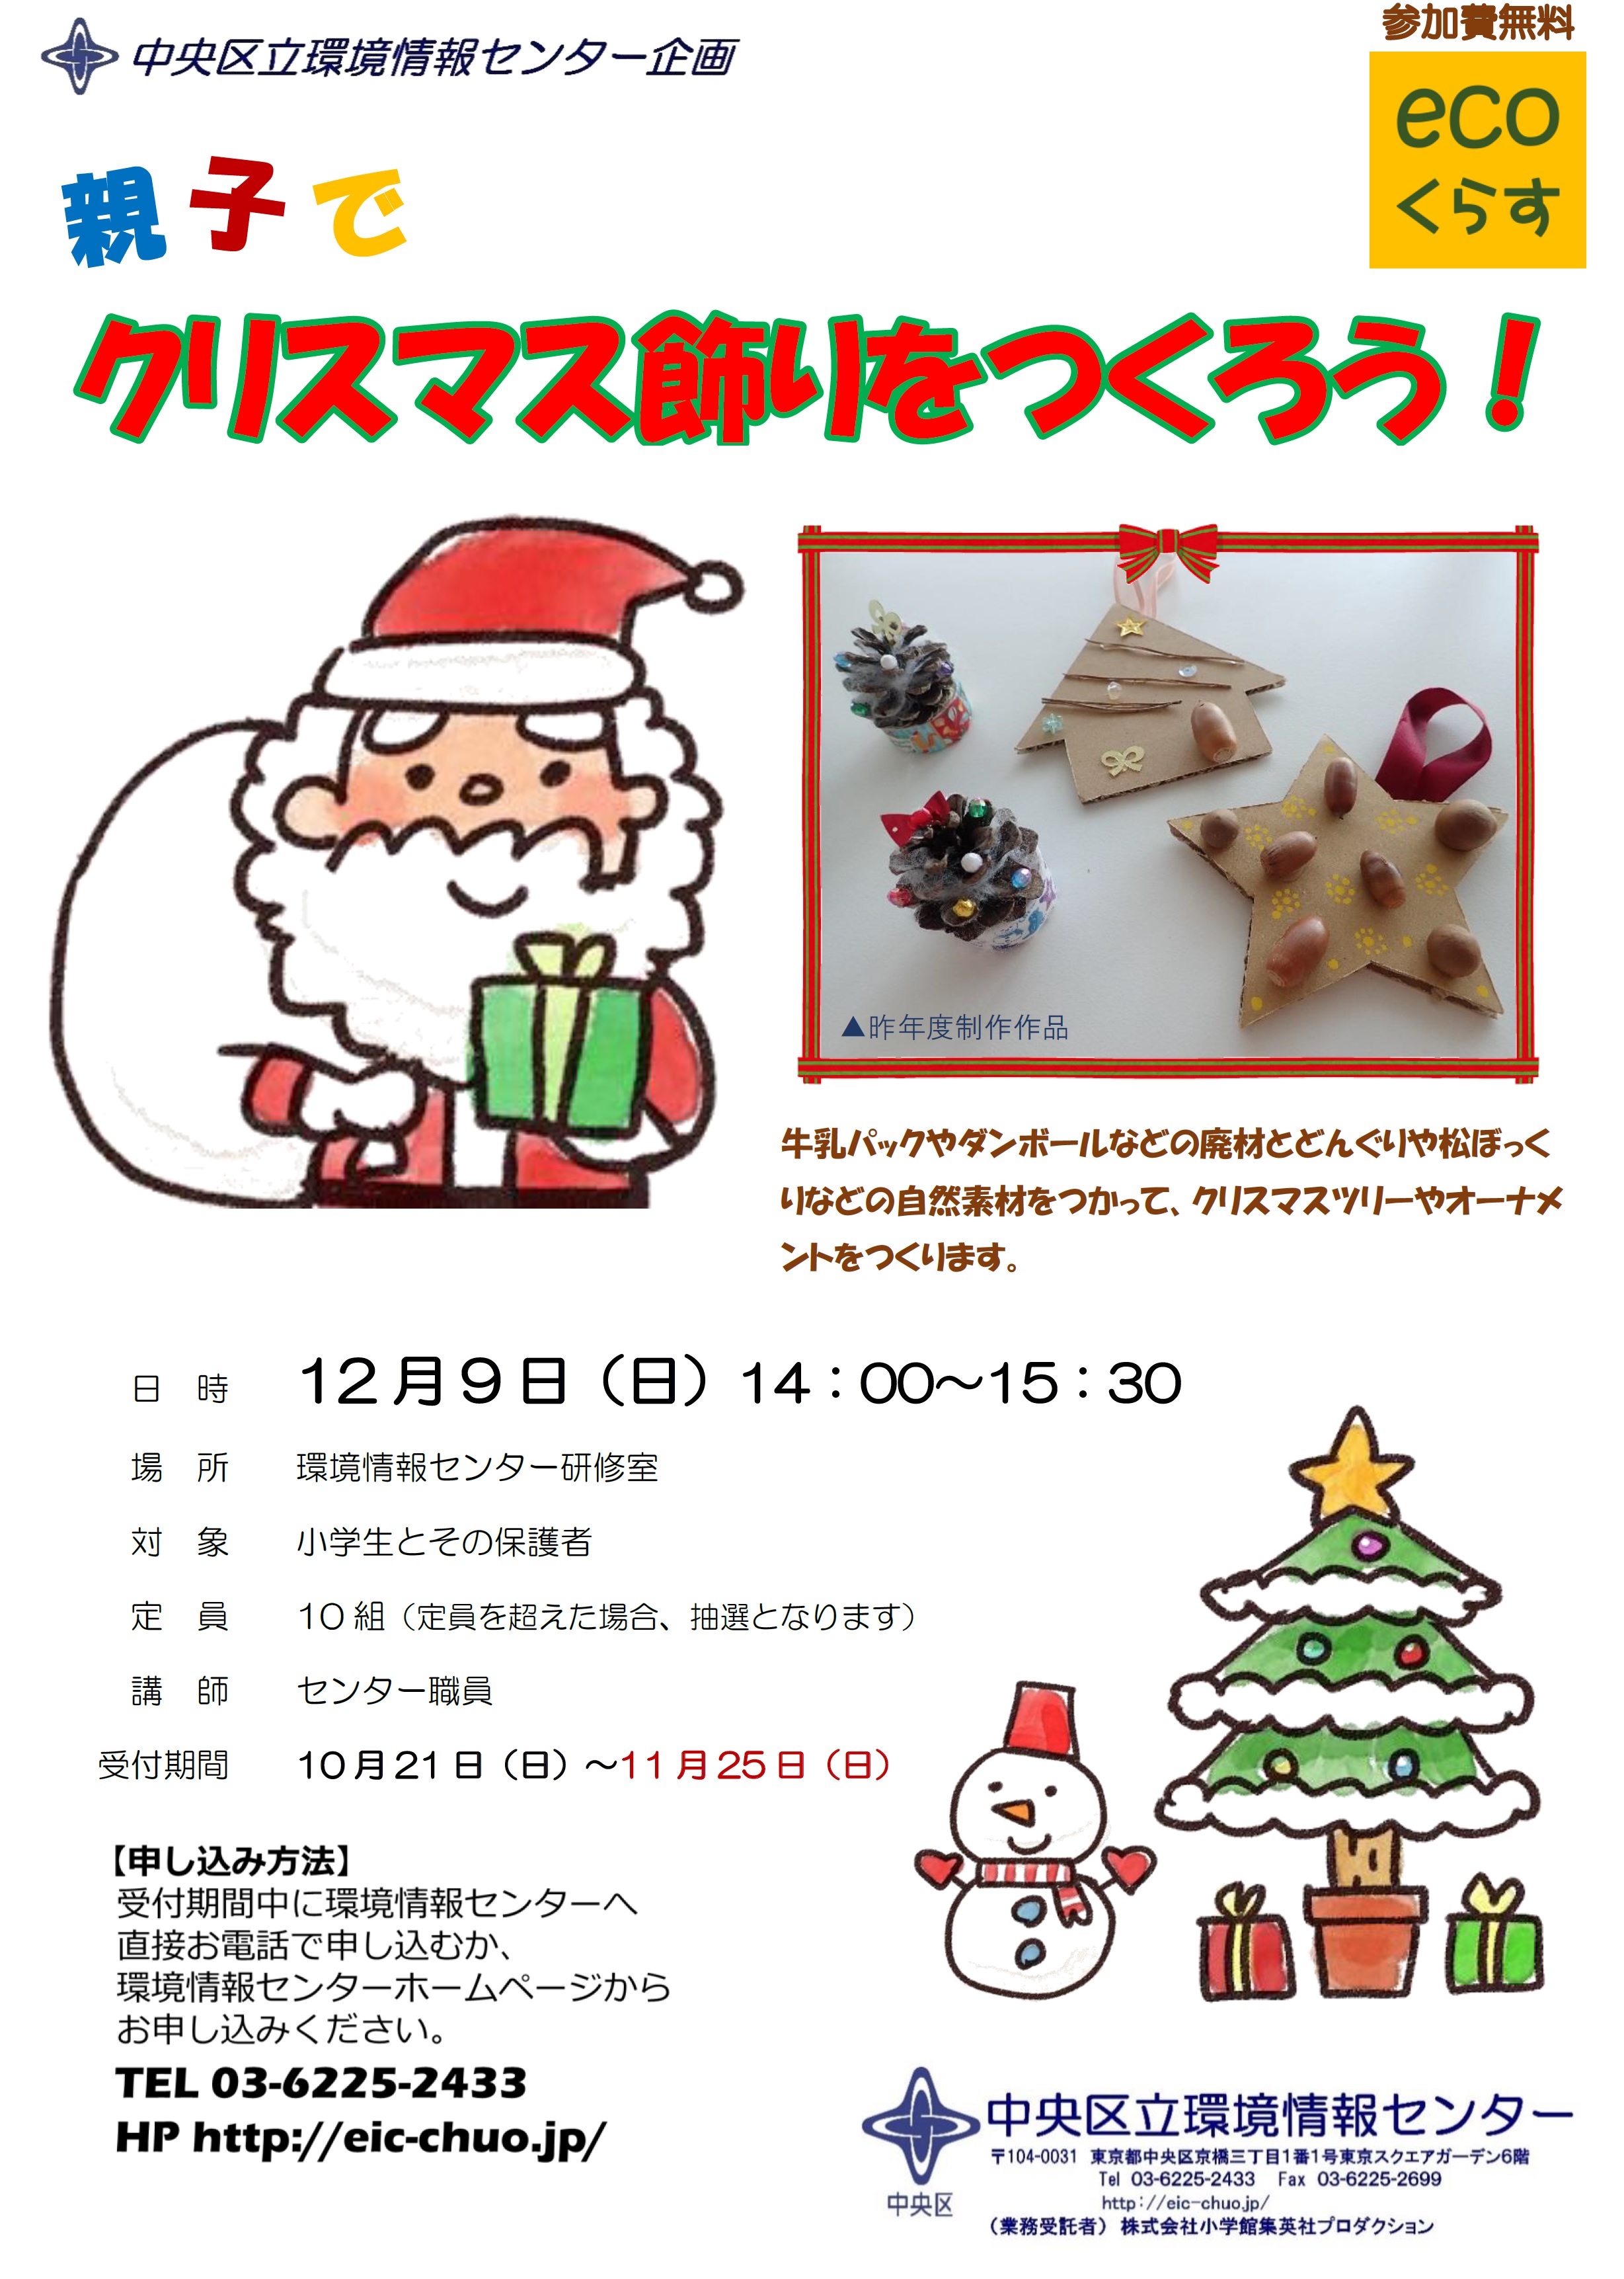 親子でクリスマス飾りをつくろう イベント情報 Kyobashi Times